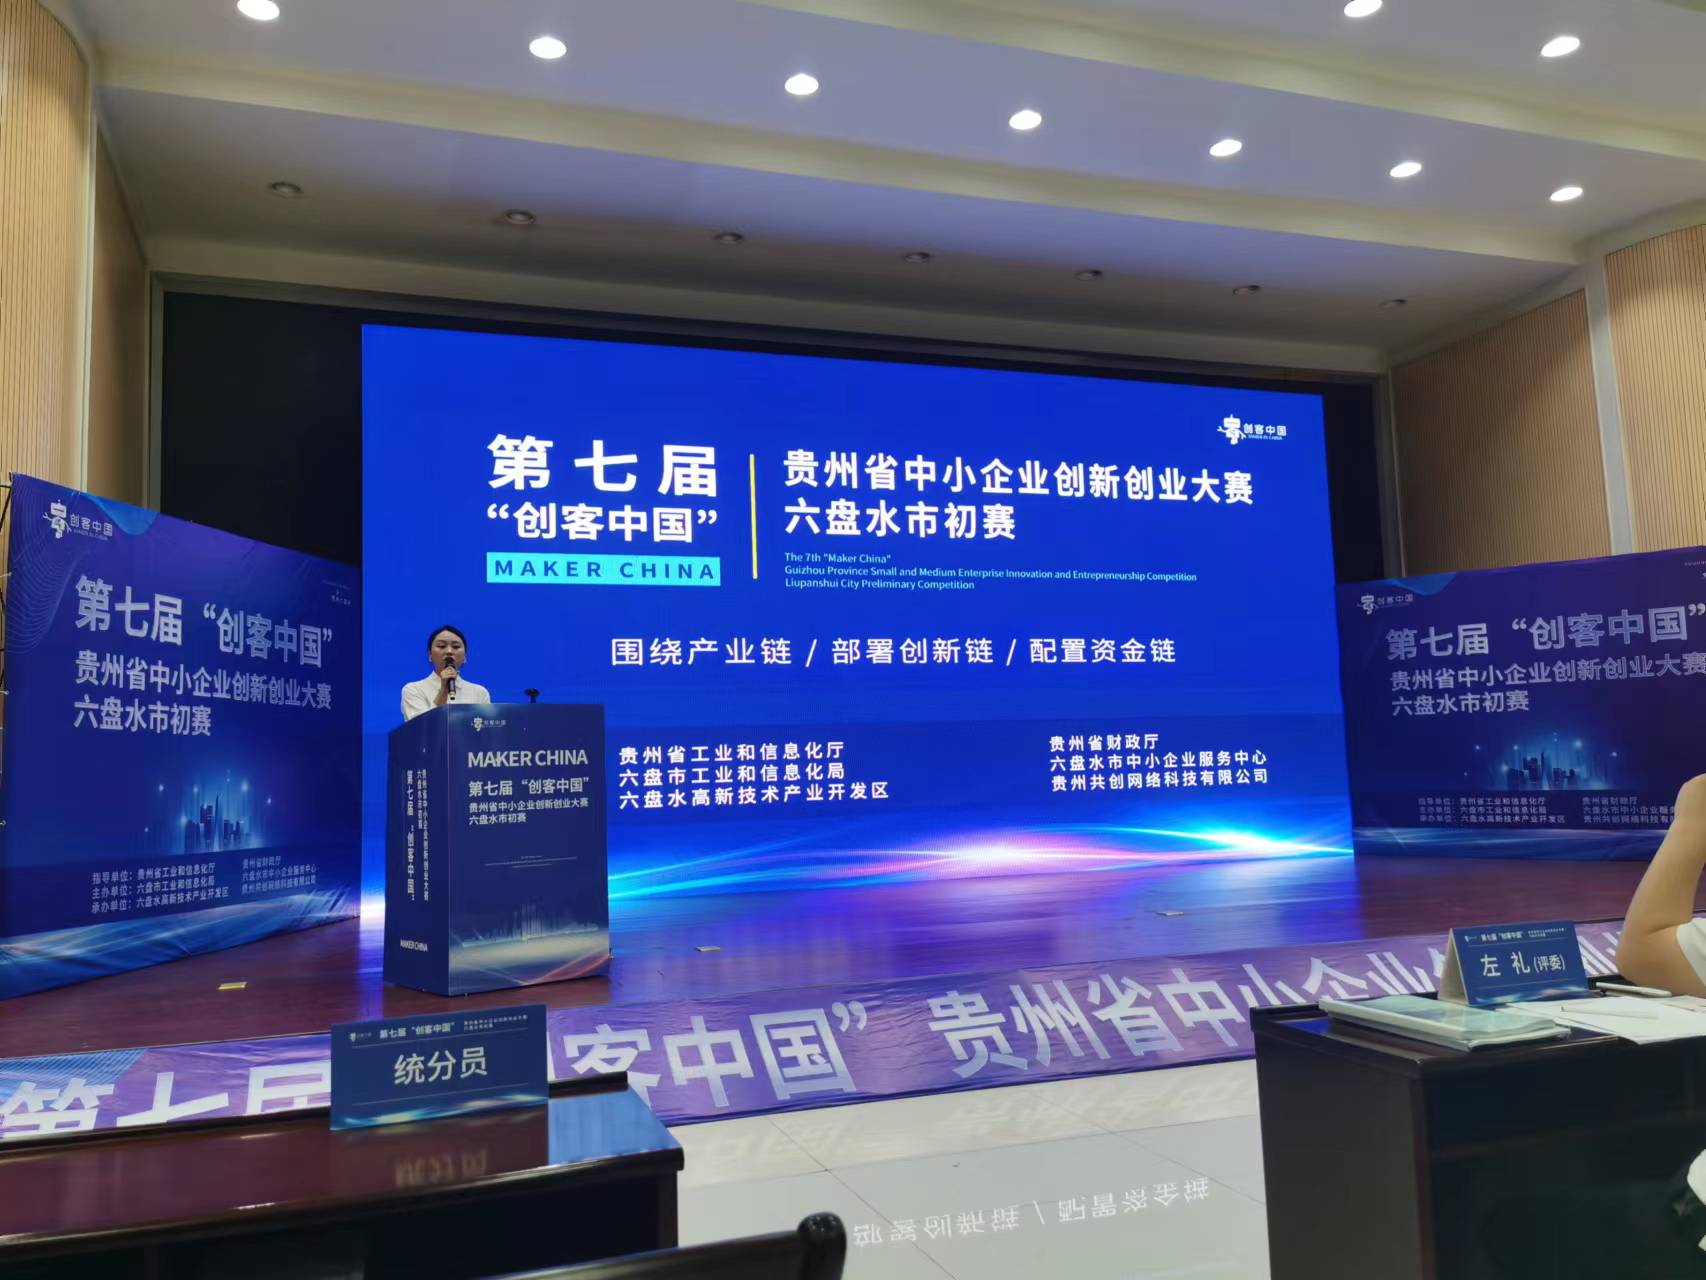  第七届“创客中国”贵州省中小企业创新创业大赛六盘水市初赛成功举办